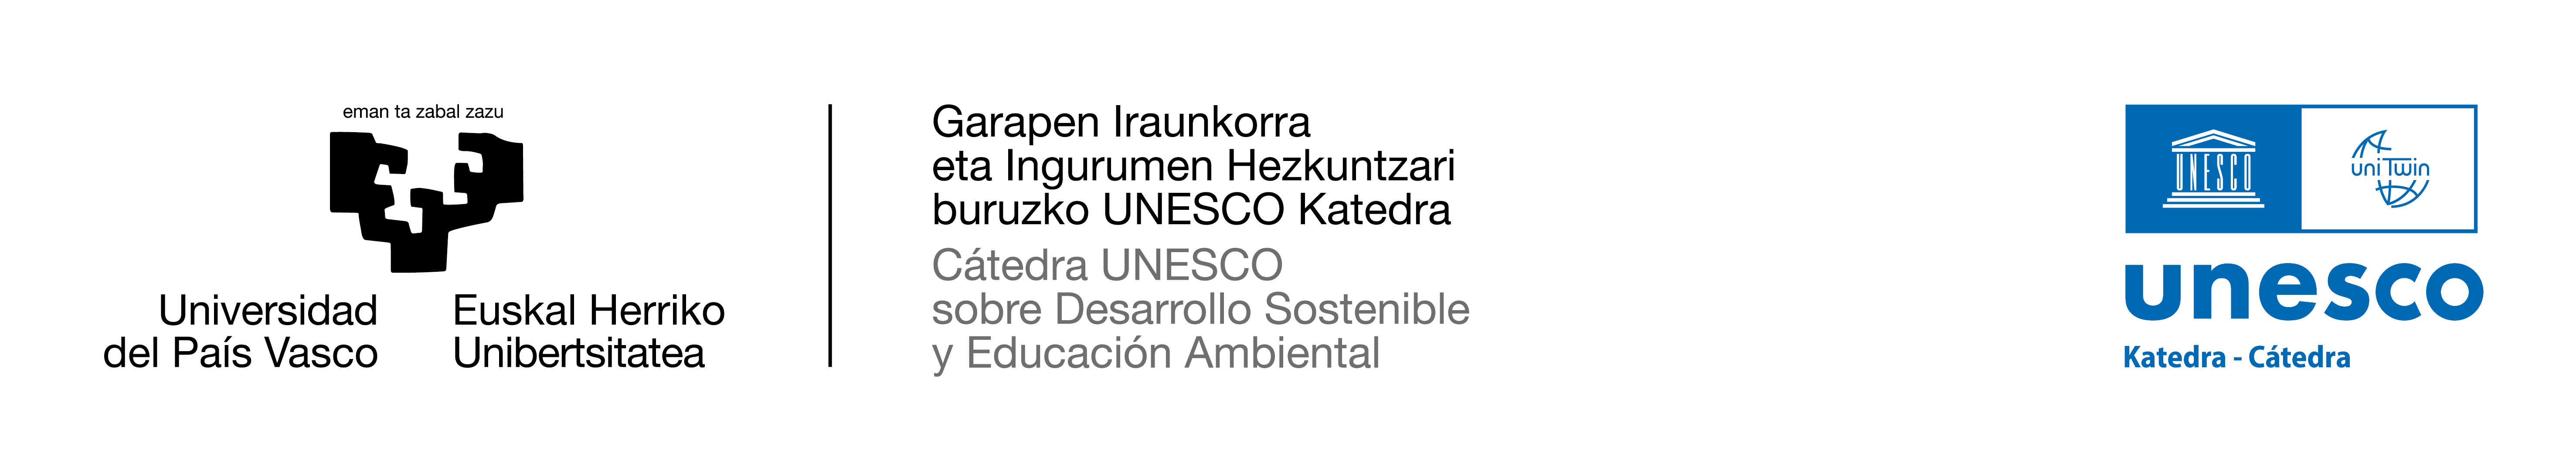 Catedra UNESCO de Desarrollo Sostenible y Educación Ambiental